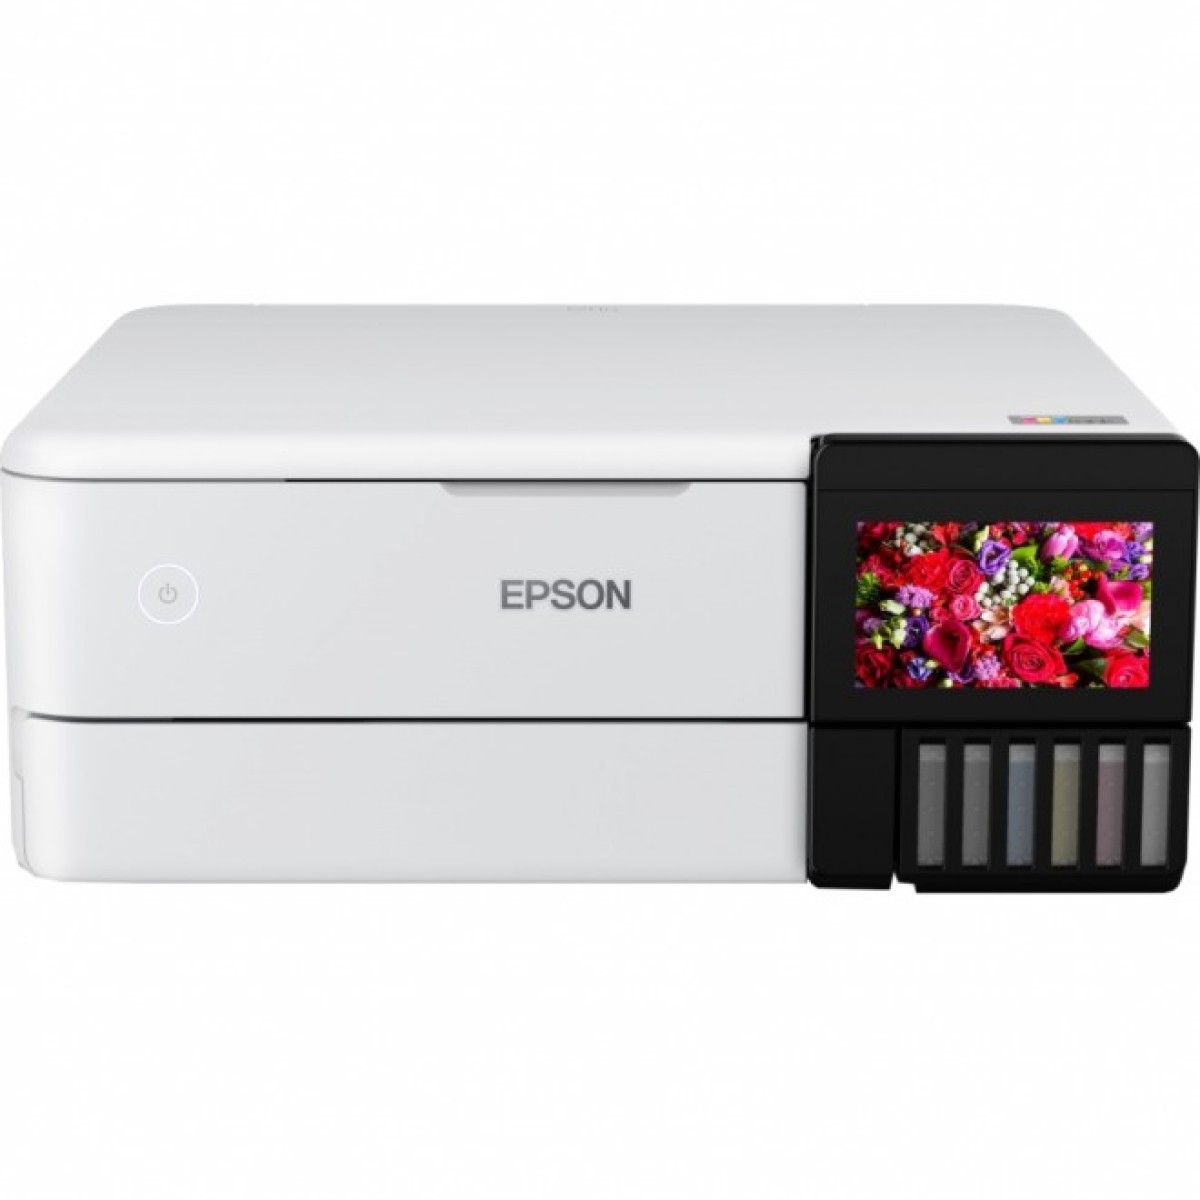 Багатофункціональний пристрій Epson L8160 Фабрика печати c WI-FI (C11CJ20404) 256_256.jpg